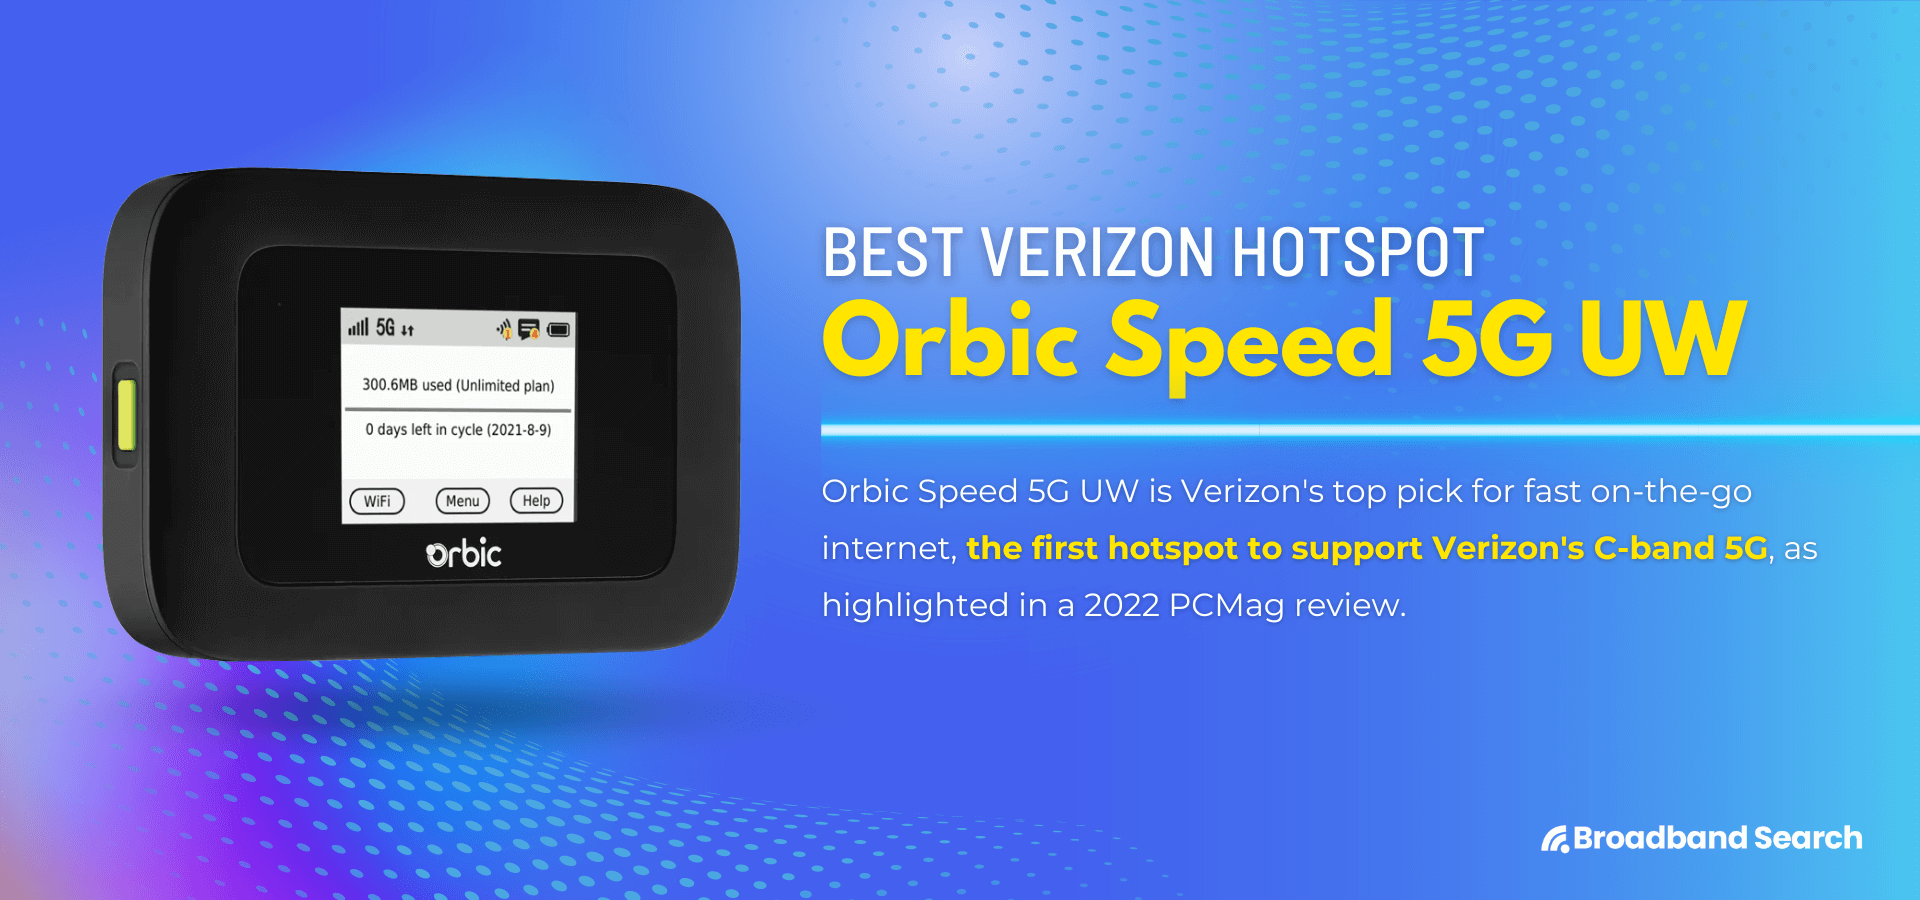 Product details of the mobile hotspot Orbit Speed 5G UW